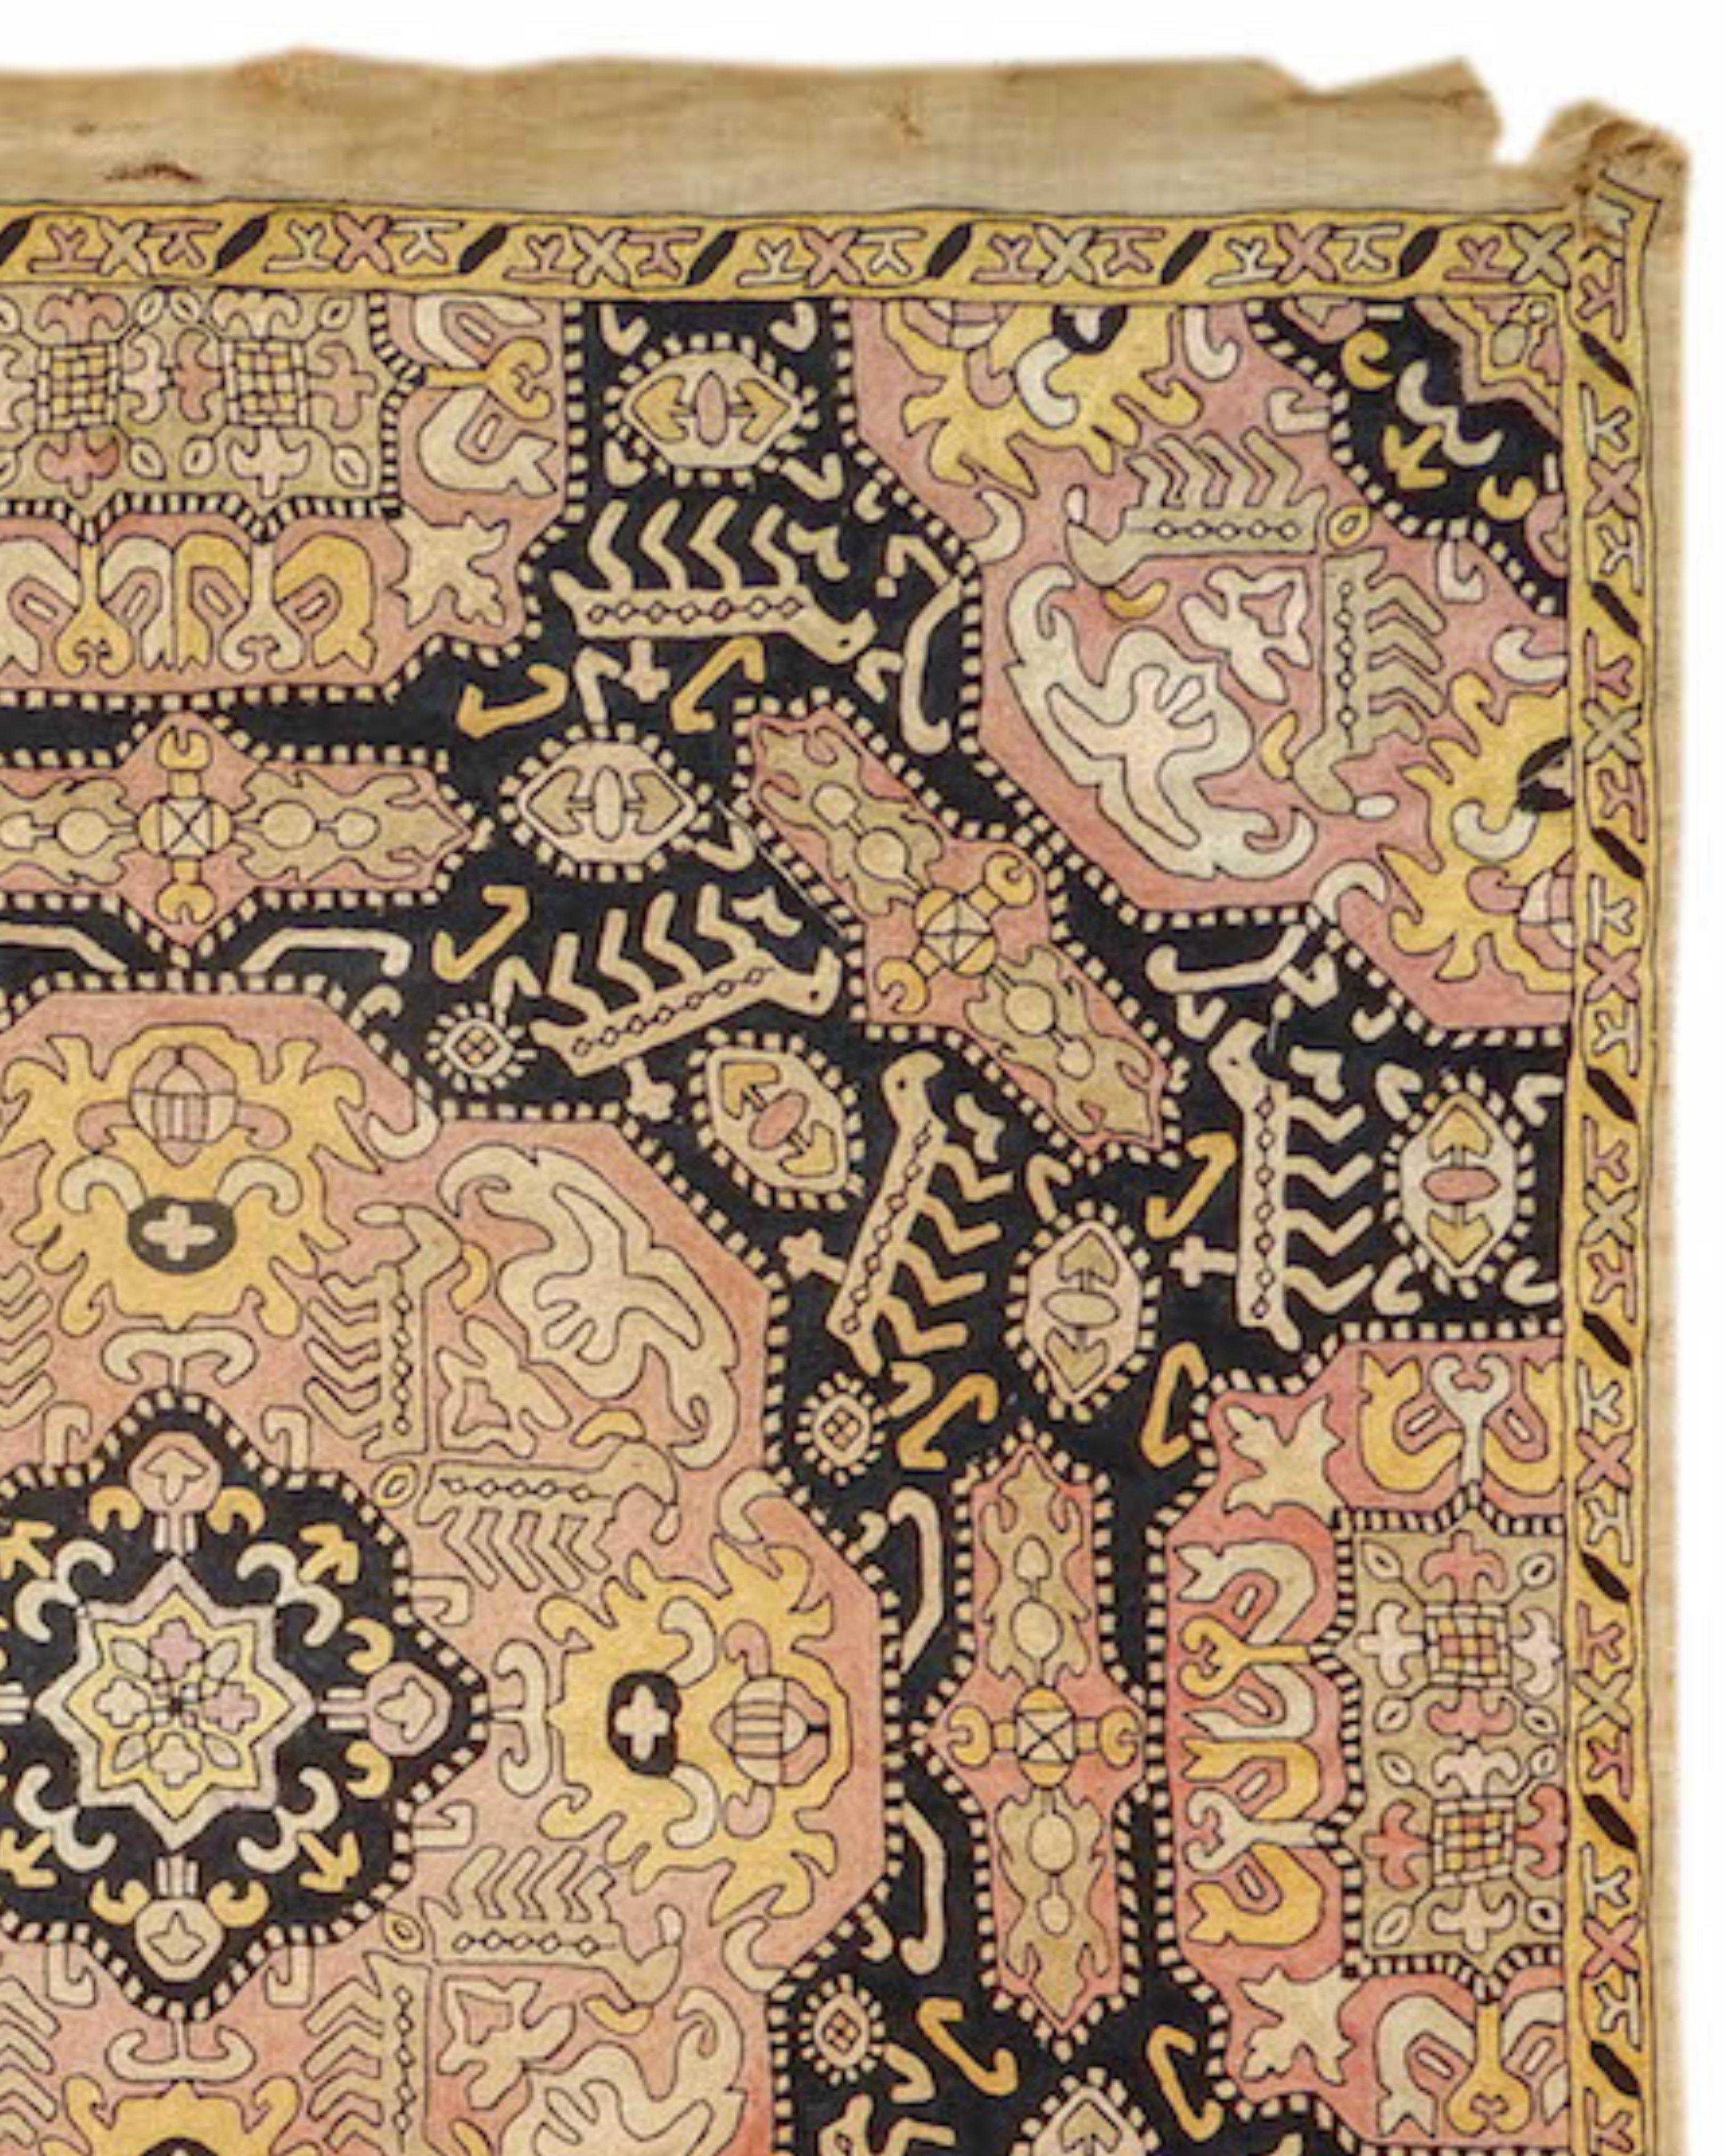 Kaukasischer Stickerei-Teppich, um 1900

Zusätzliche Informationen:
Abmessungen: 2'10